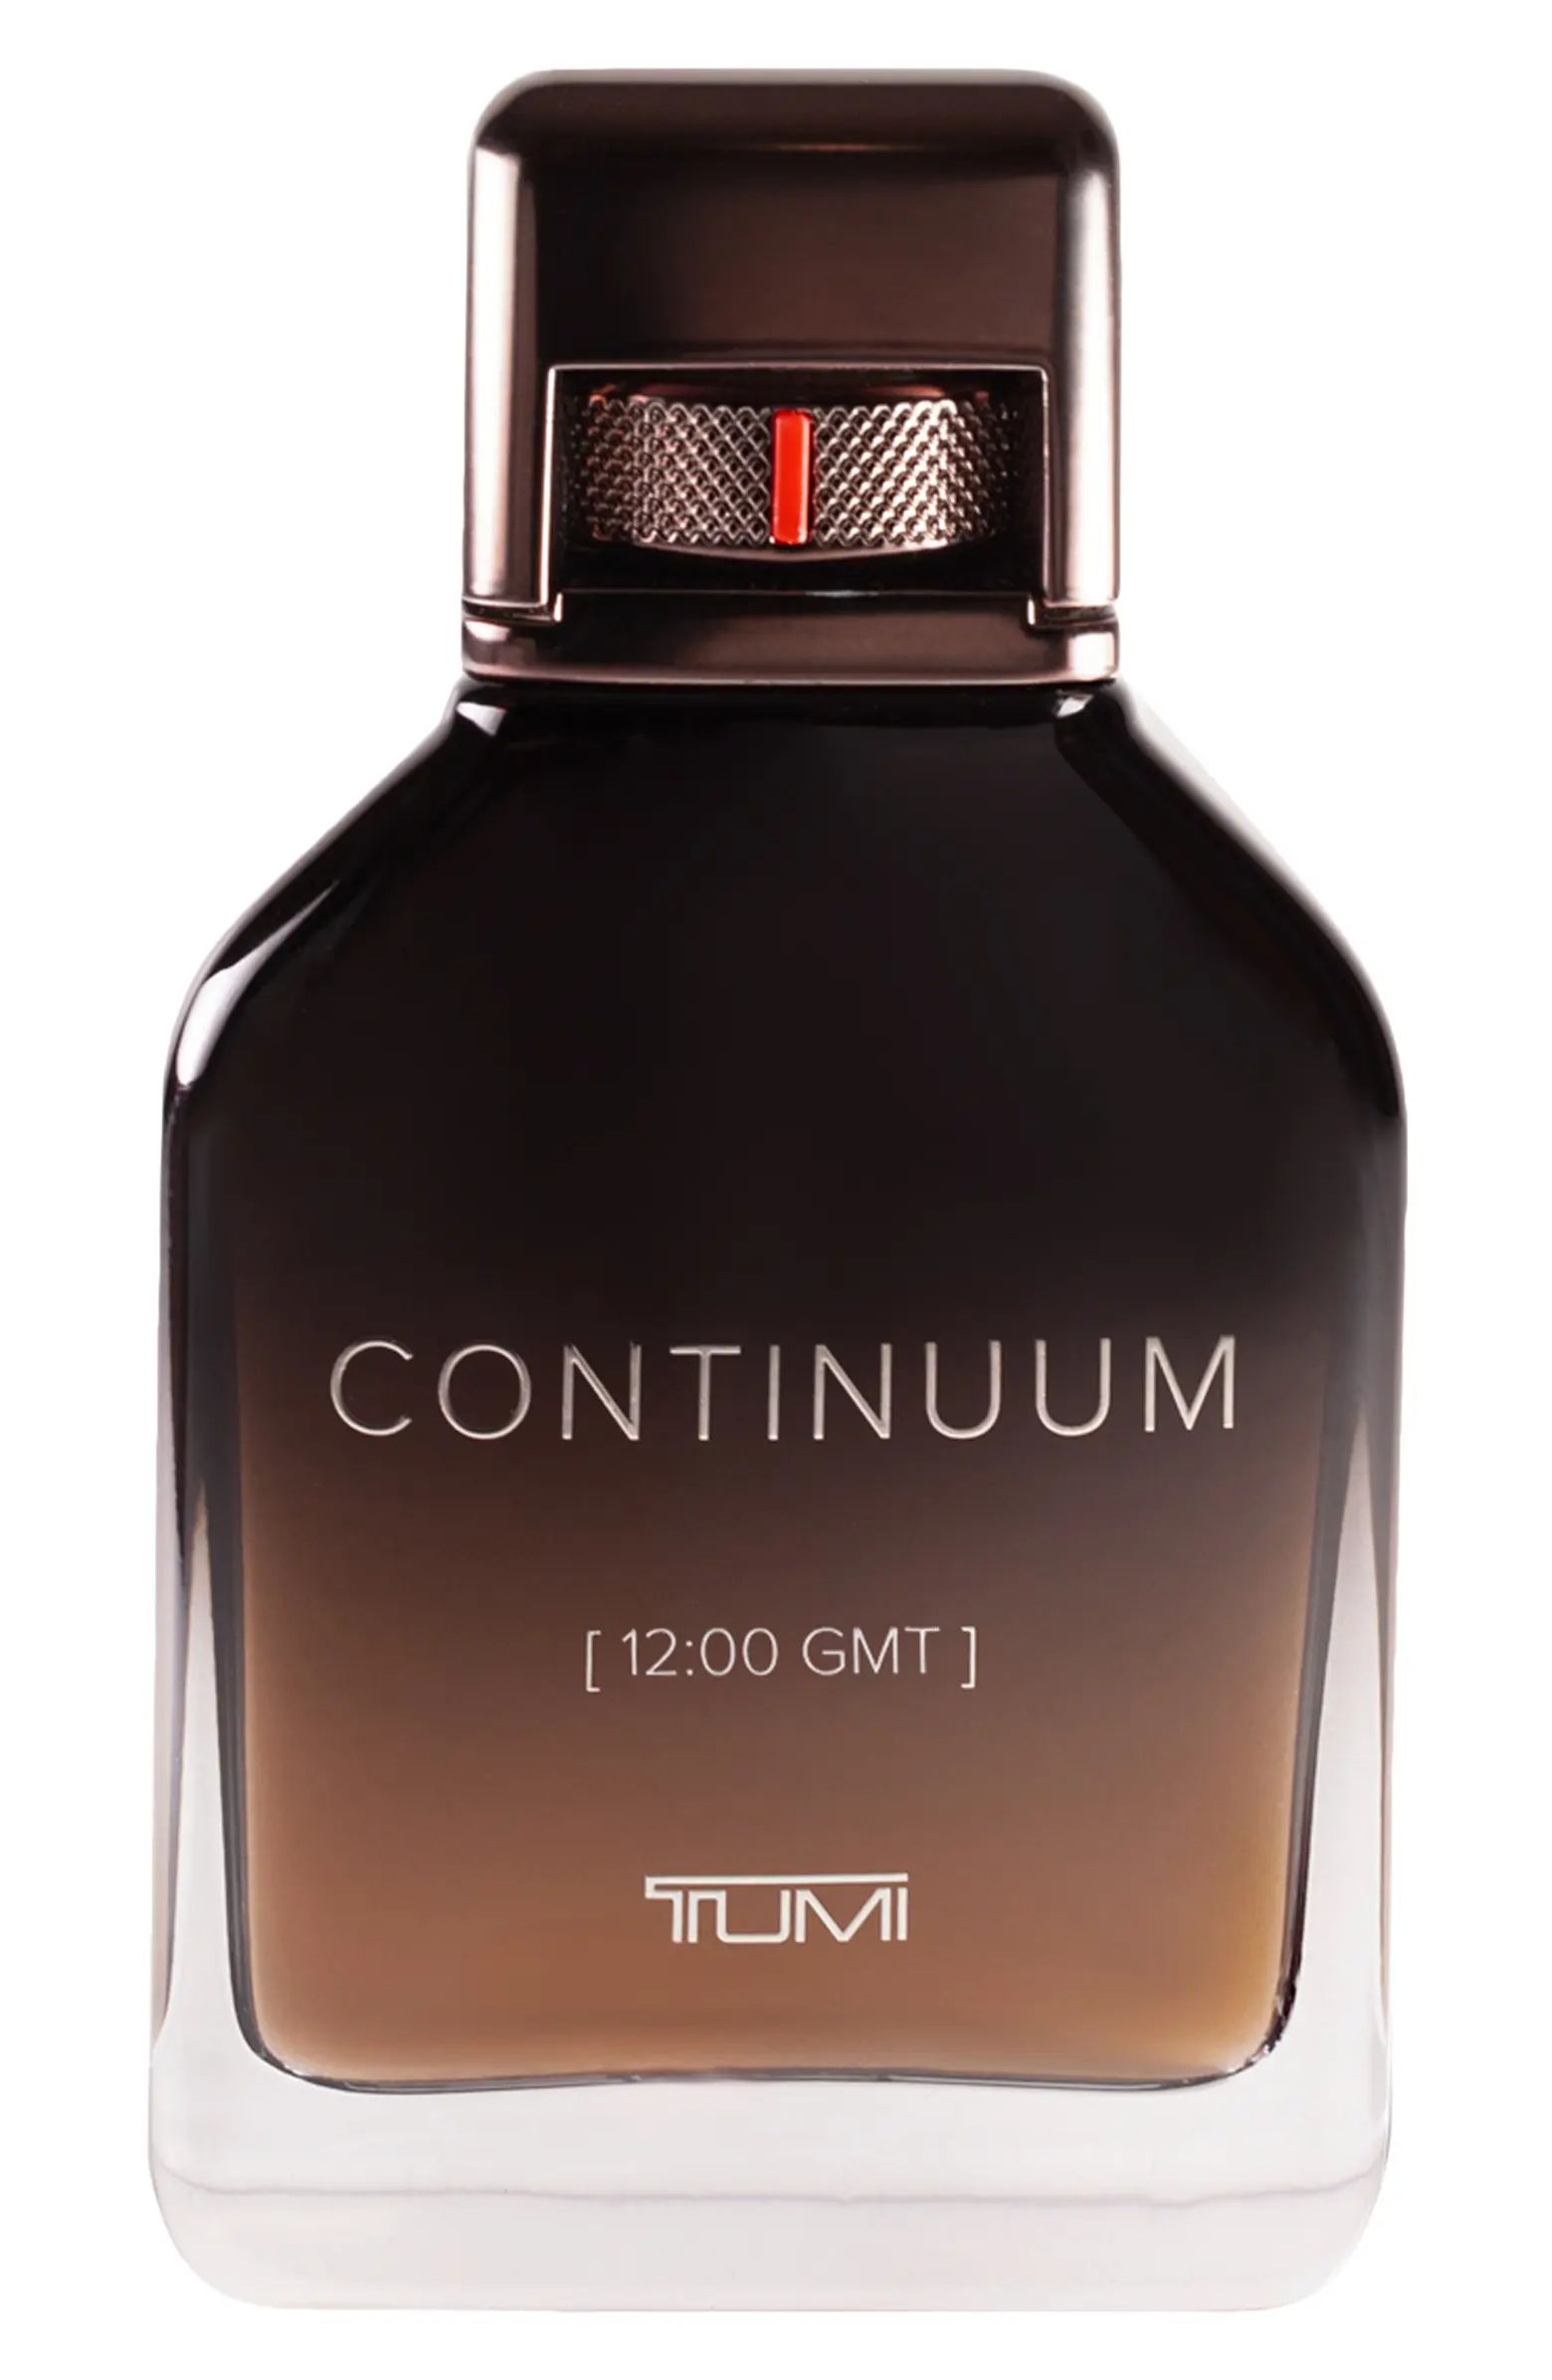 Tumi Continuum [12:00 GMT] TUMI Eau de Parfum | Nordstrom | Nordstrom